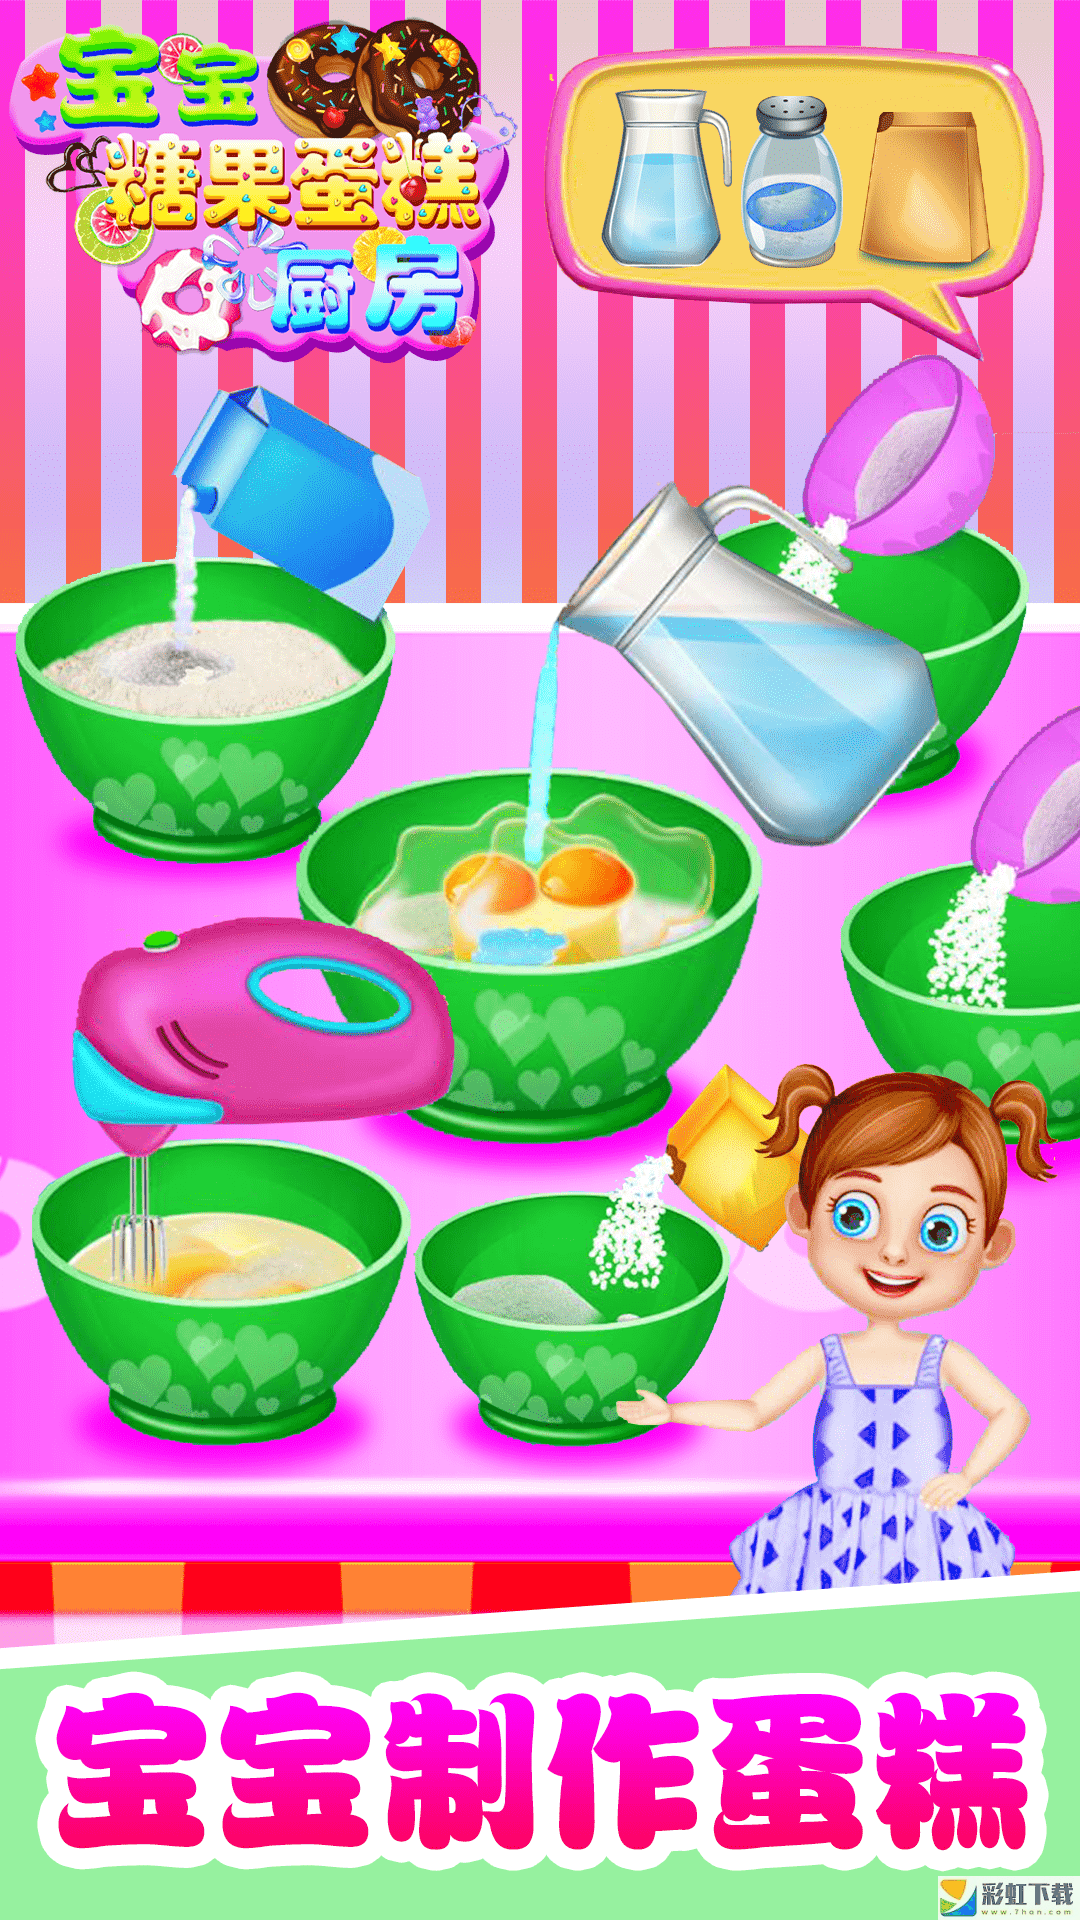 宝宝糖果糖糕厨房ios版糖糕厨房游戏正式版下载-宝宝糖果糖糕厨房全食材解锁ios版v1.0预约